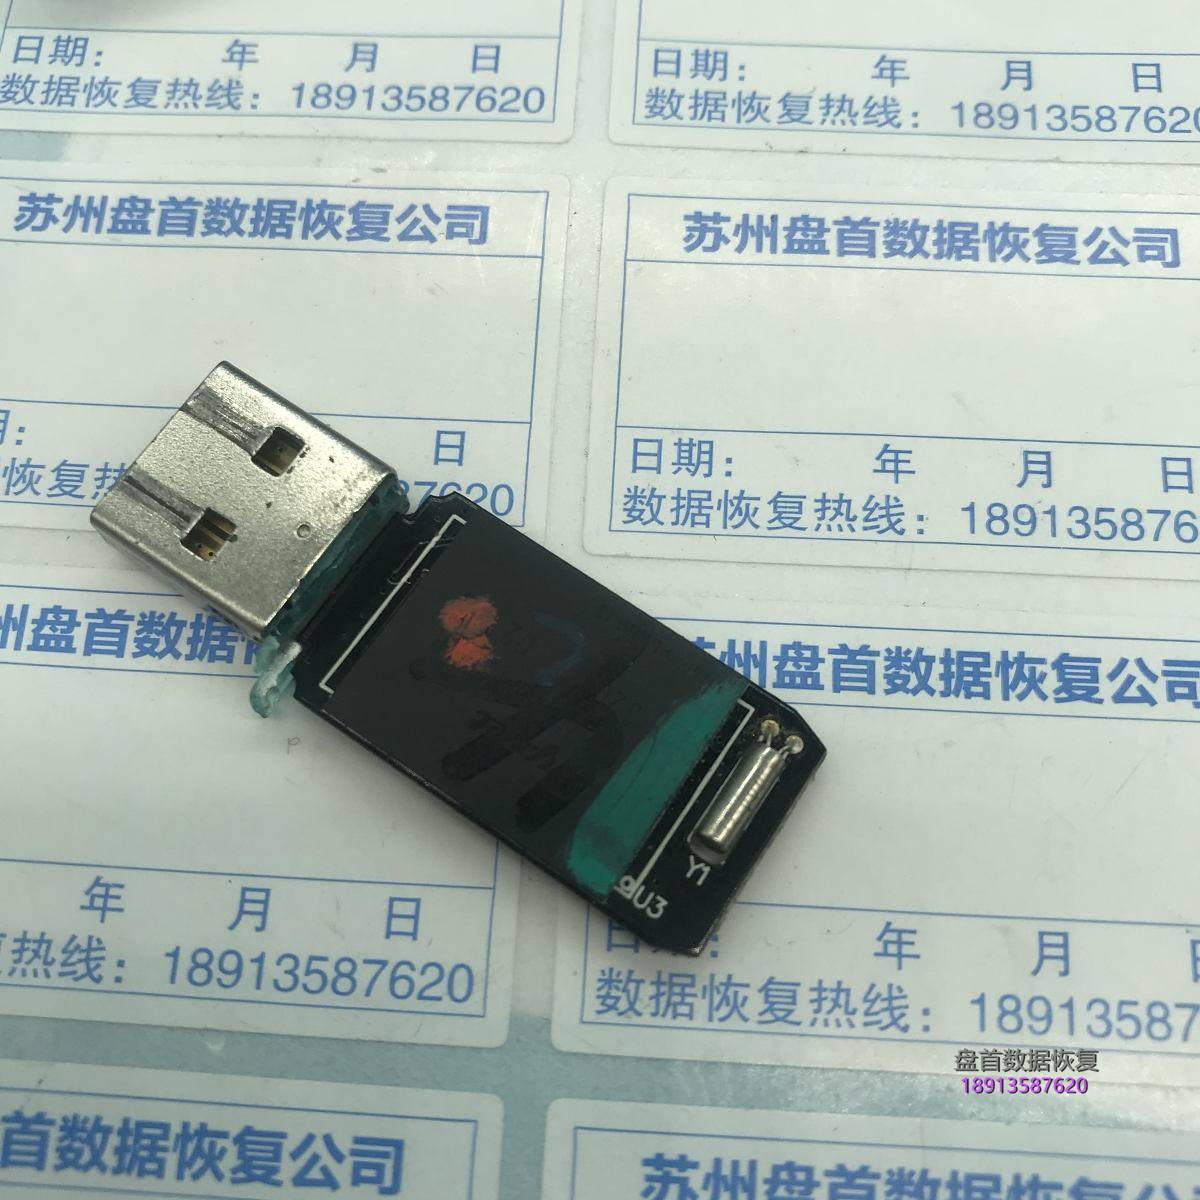 U盘插入电脑显示”无法识别的USB设备”主控AU6985HL数据恢复成功